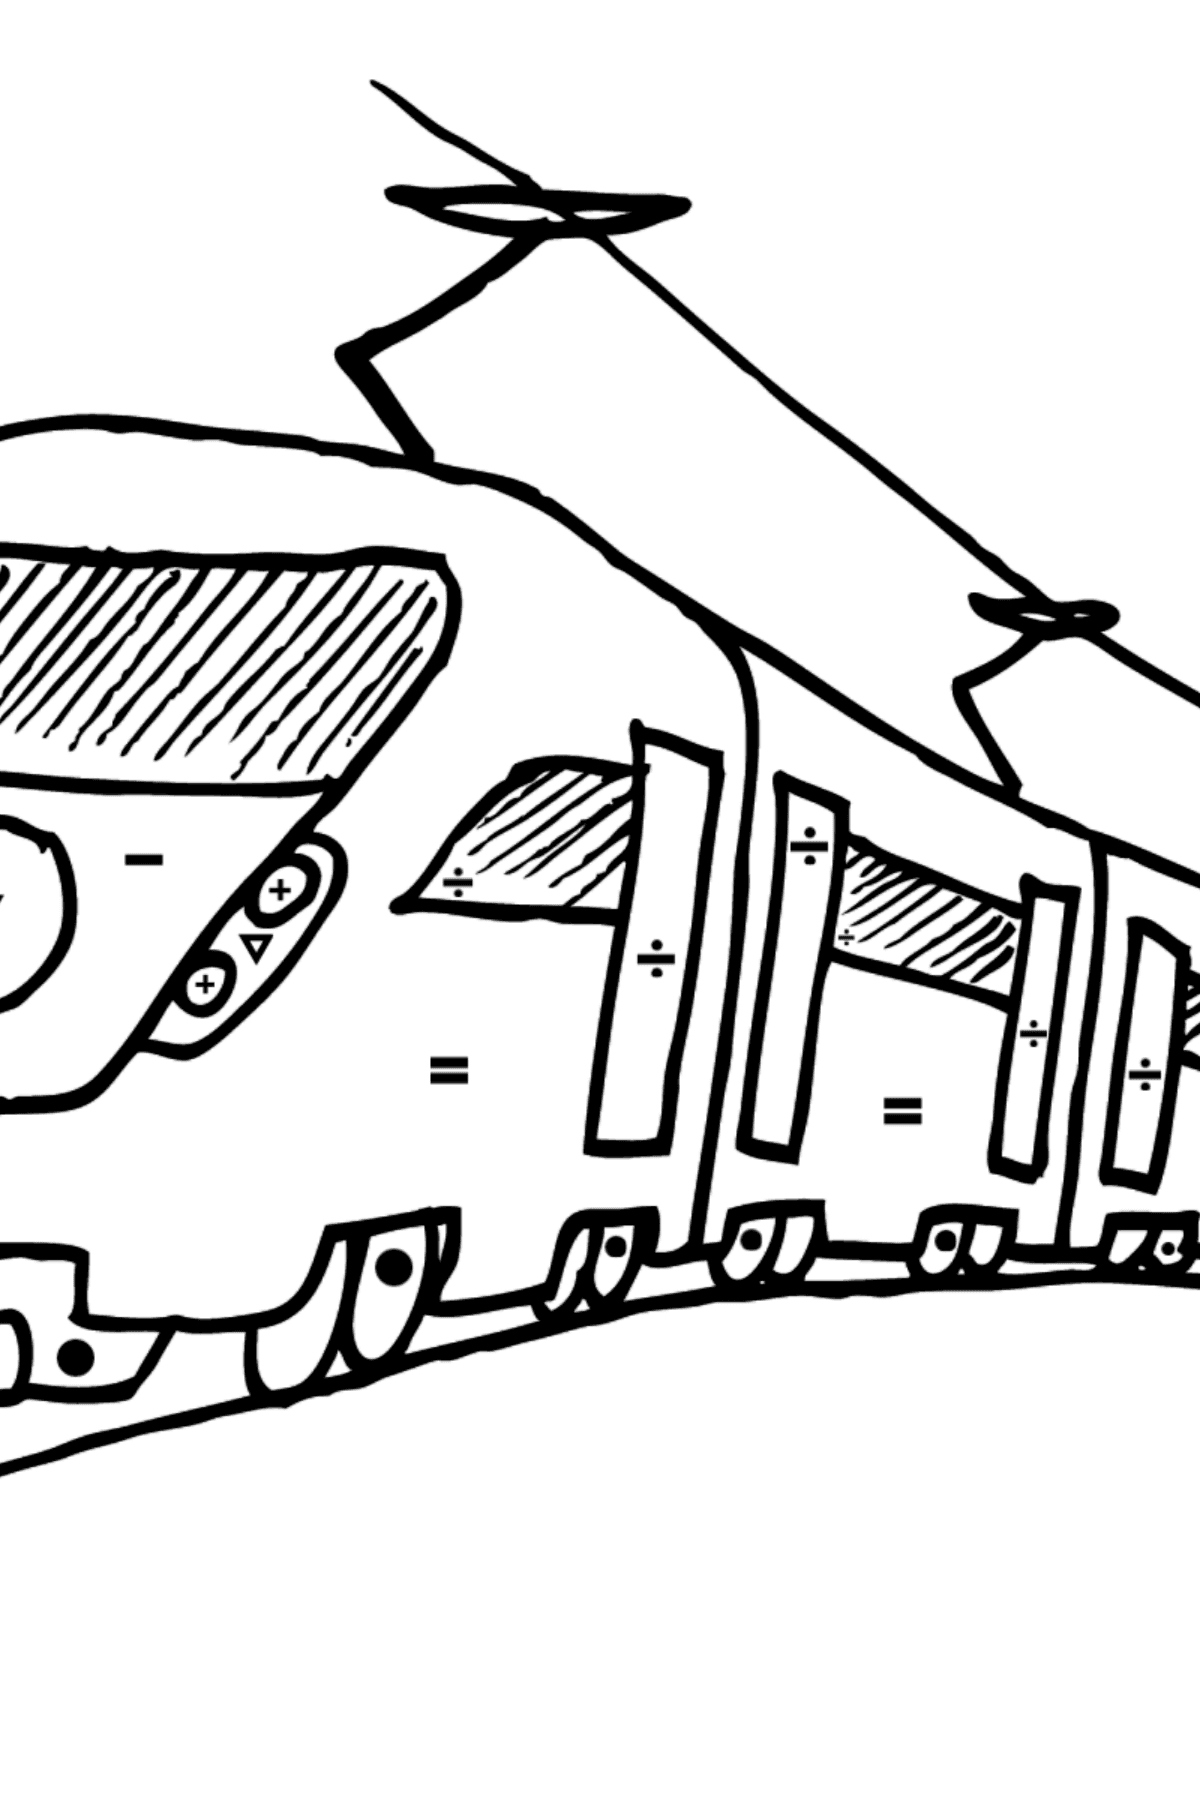 Dibujo para Colorear de Tren de Pasajeros - Colorear por Símbolos para Niños